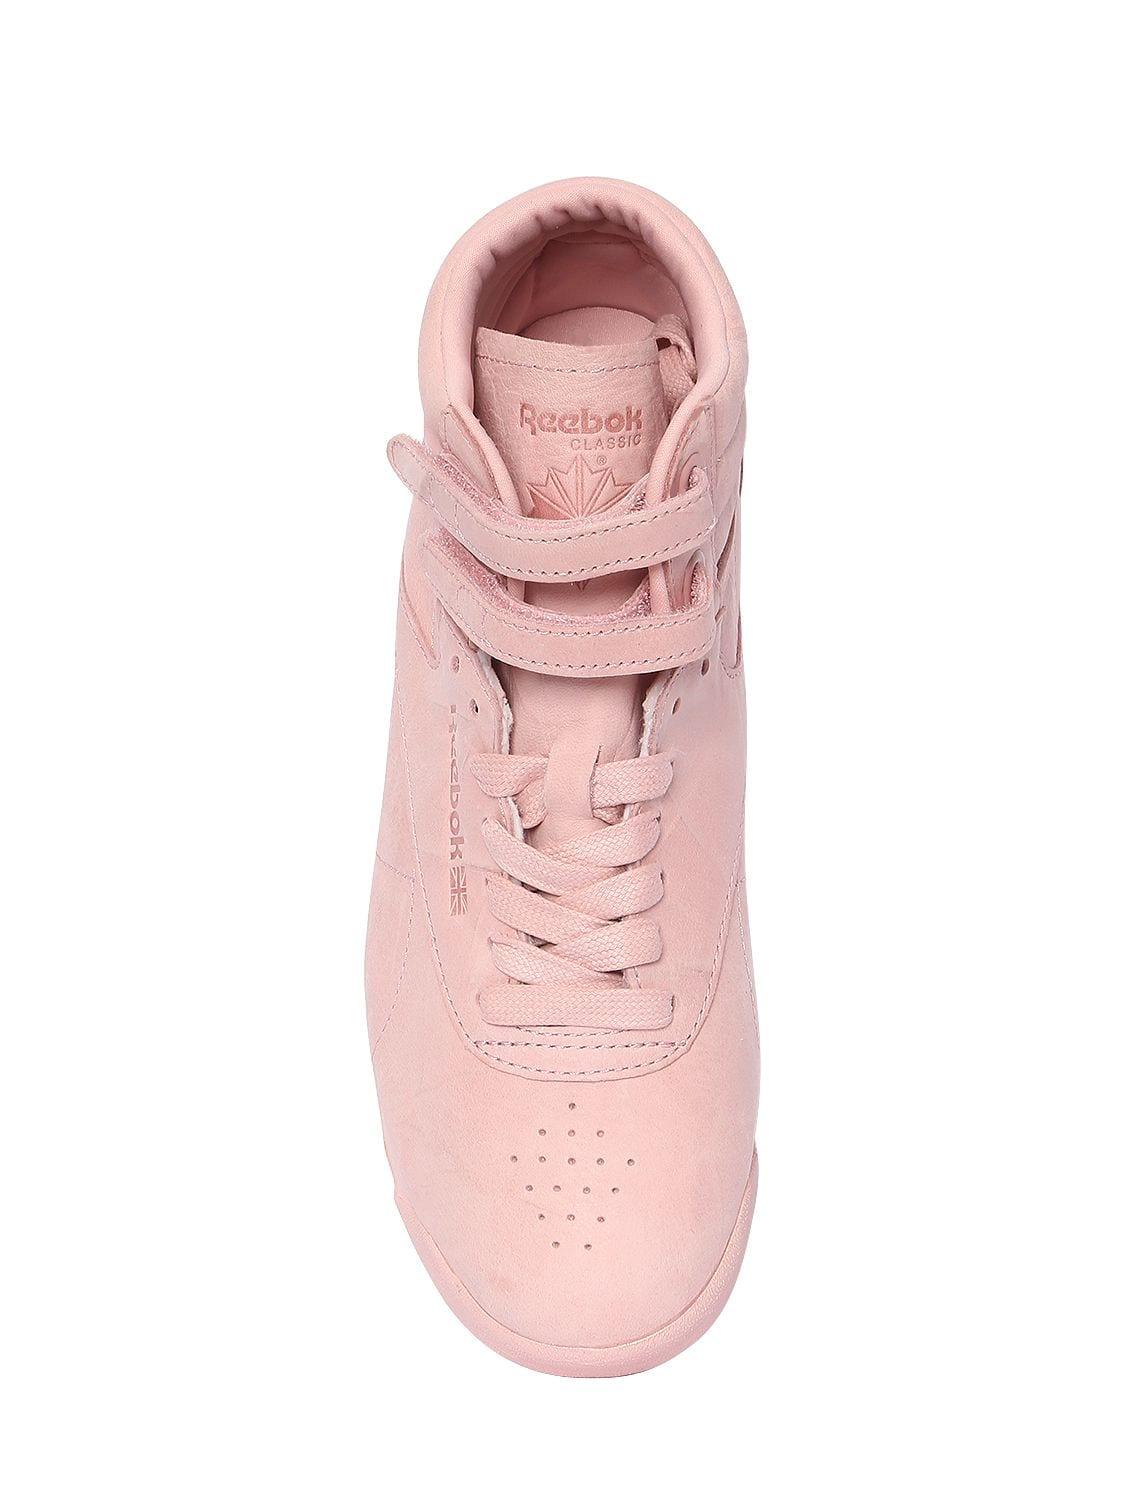 Reebok Freestyle Nubuck High Top Sneakers in Pink | Lyst